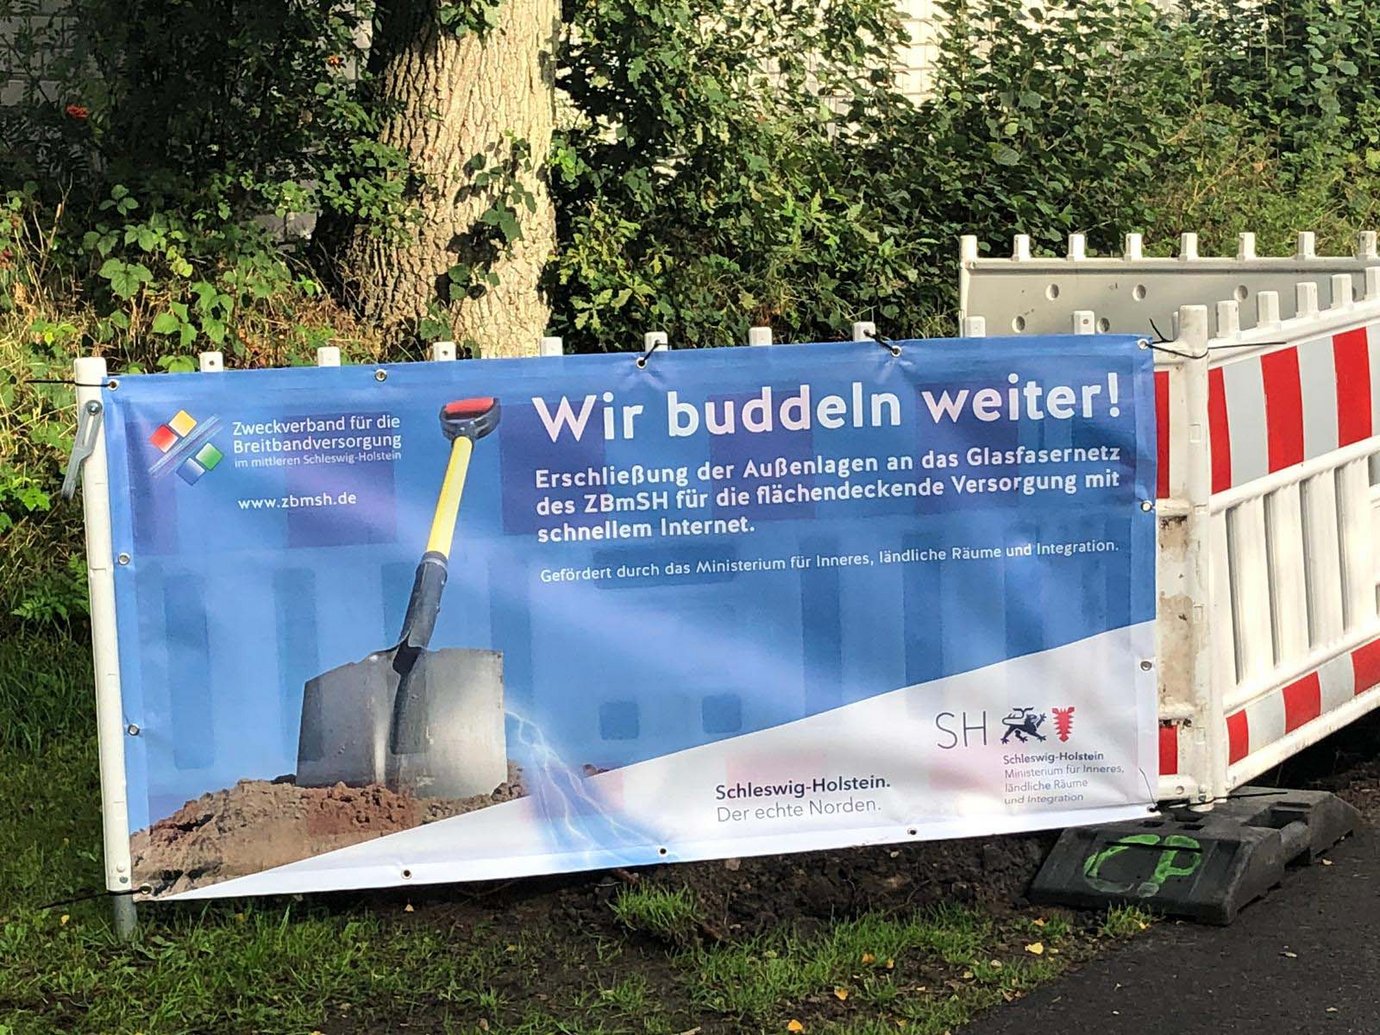 Plakat mit der Aufschrift "wir buddeln weiter" an einer Baustellenabsperrung